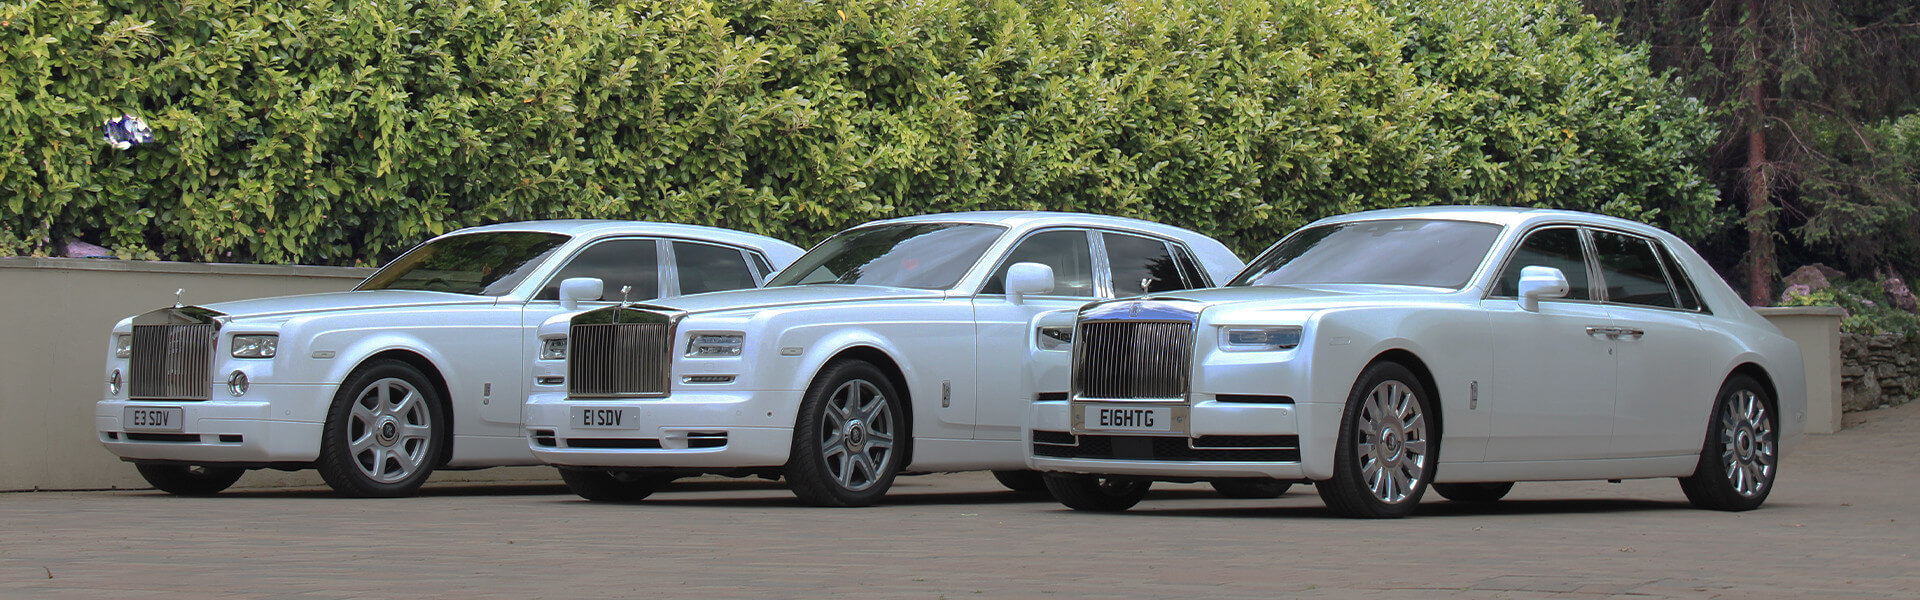 Rolls Royce Fleet